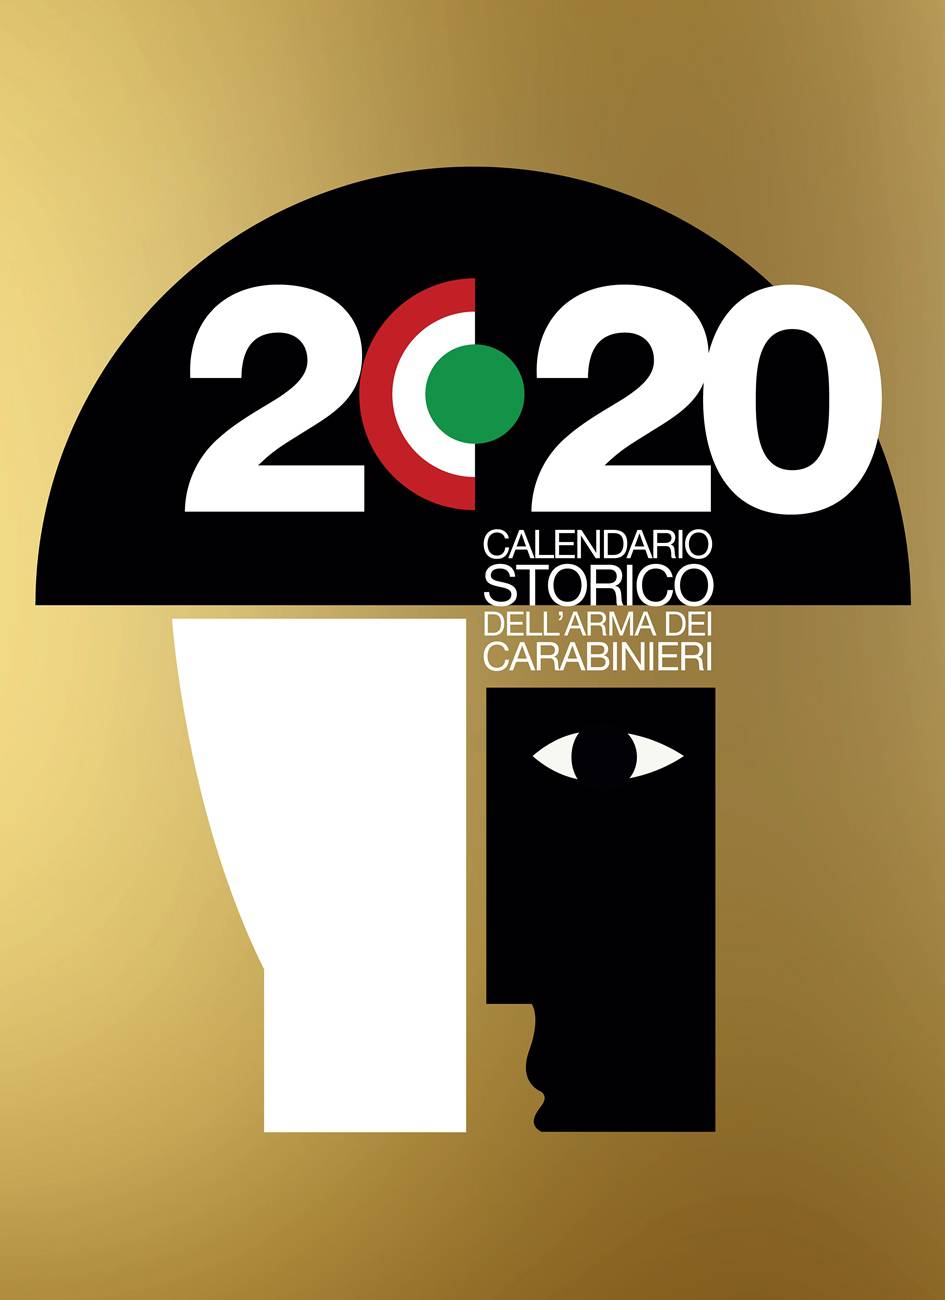  Presentato il Calendario Storico 2020 dell’Arma dei Carabinieri